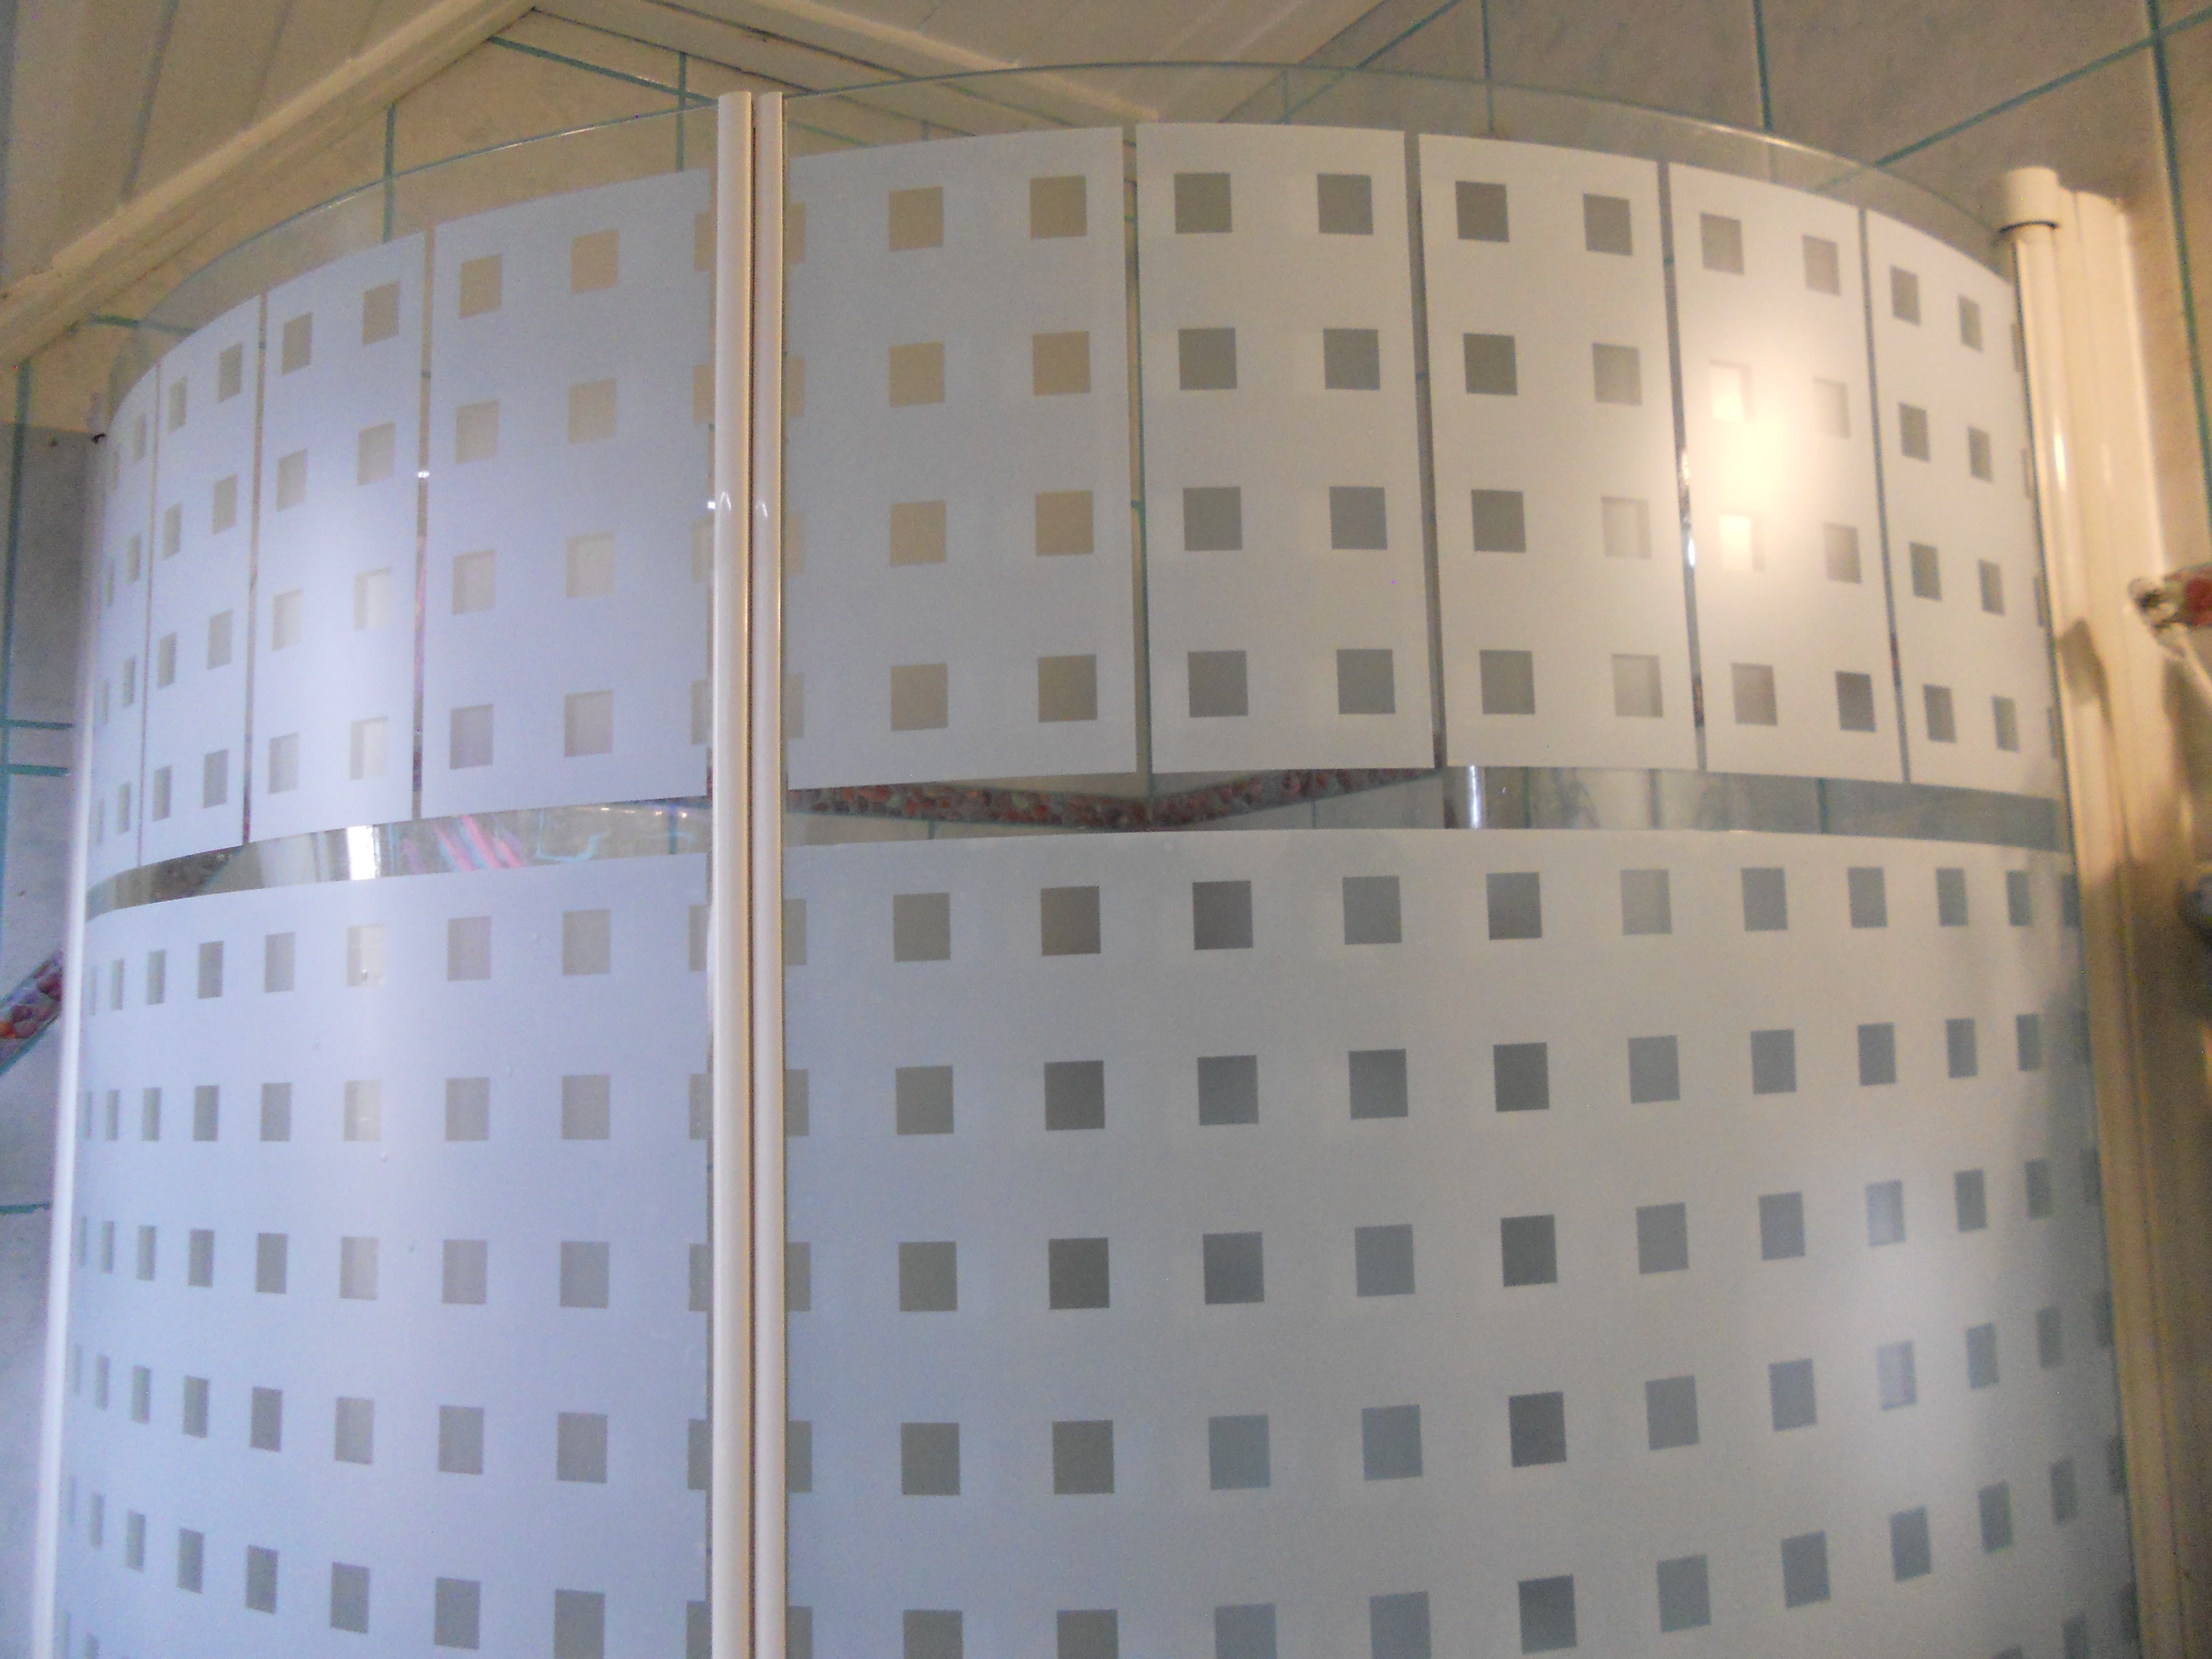   Szabályos Kocka Ragasztó Nélküli Prémium Ablakfólia (Caree) (1,5 m x 67,5 cm)
